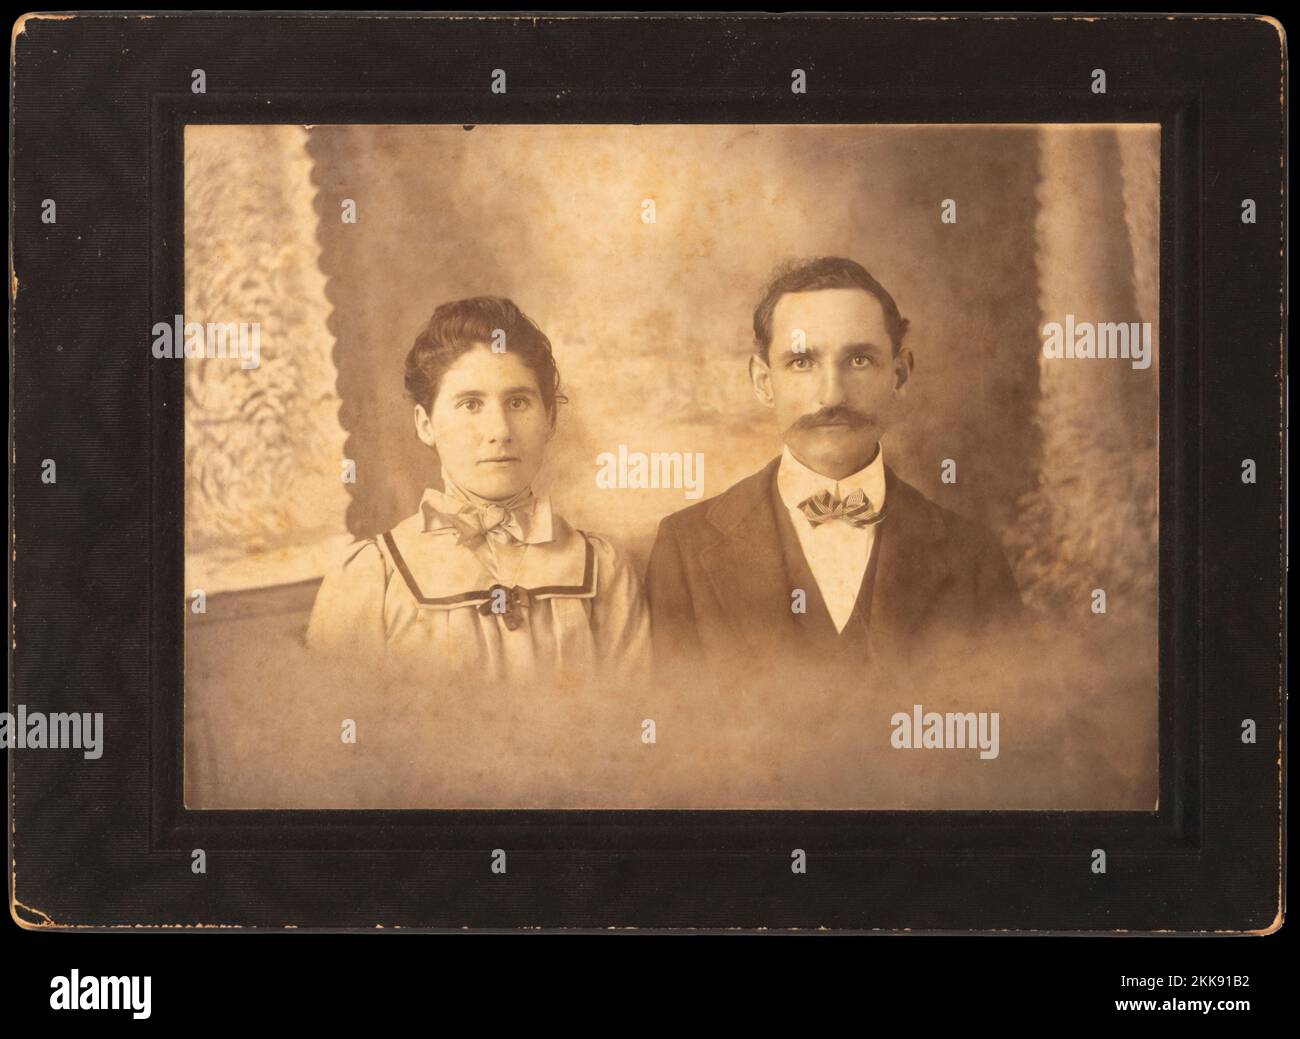 Ein lange verstorbener Verwandter des Fotografen mit seiner jungen Frau, der ein Porträt in den späten 1800er aufnimmt. Stockfoto